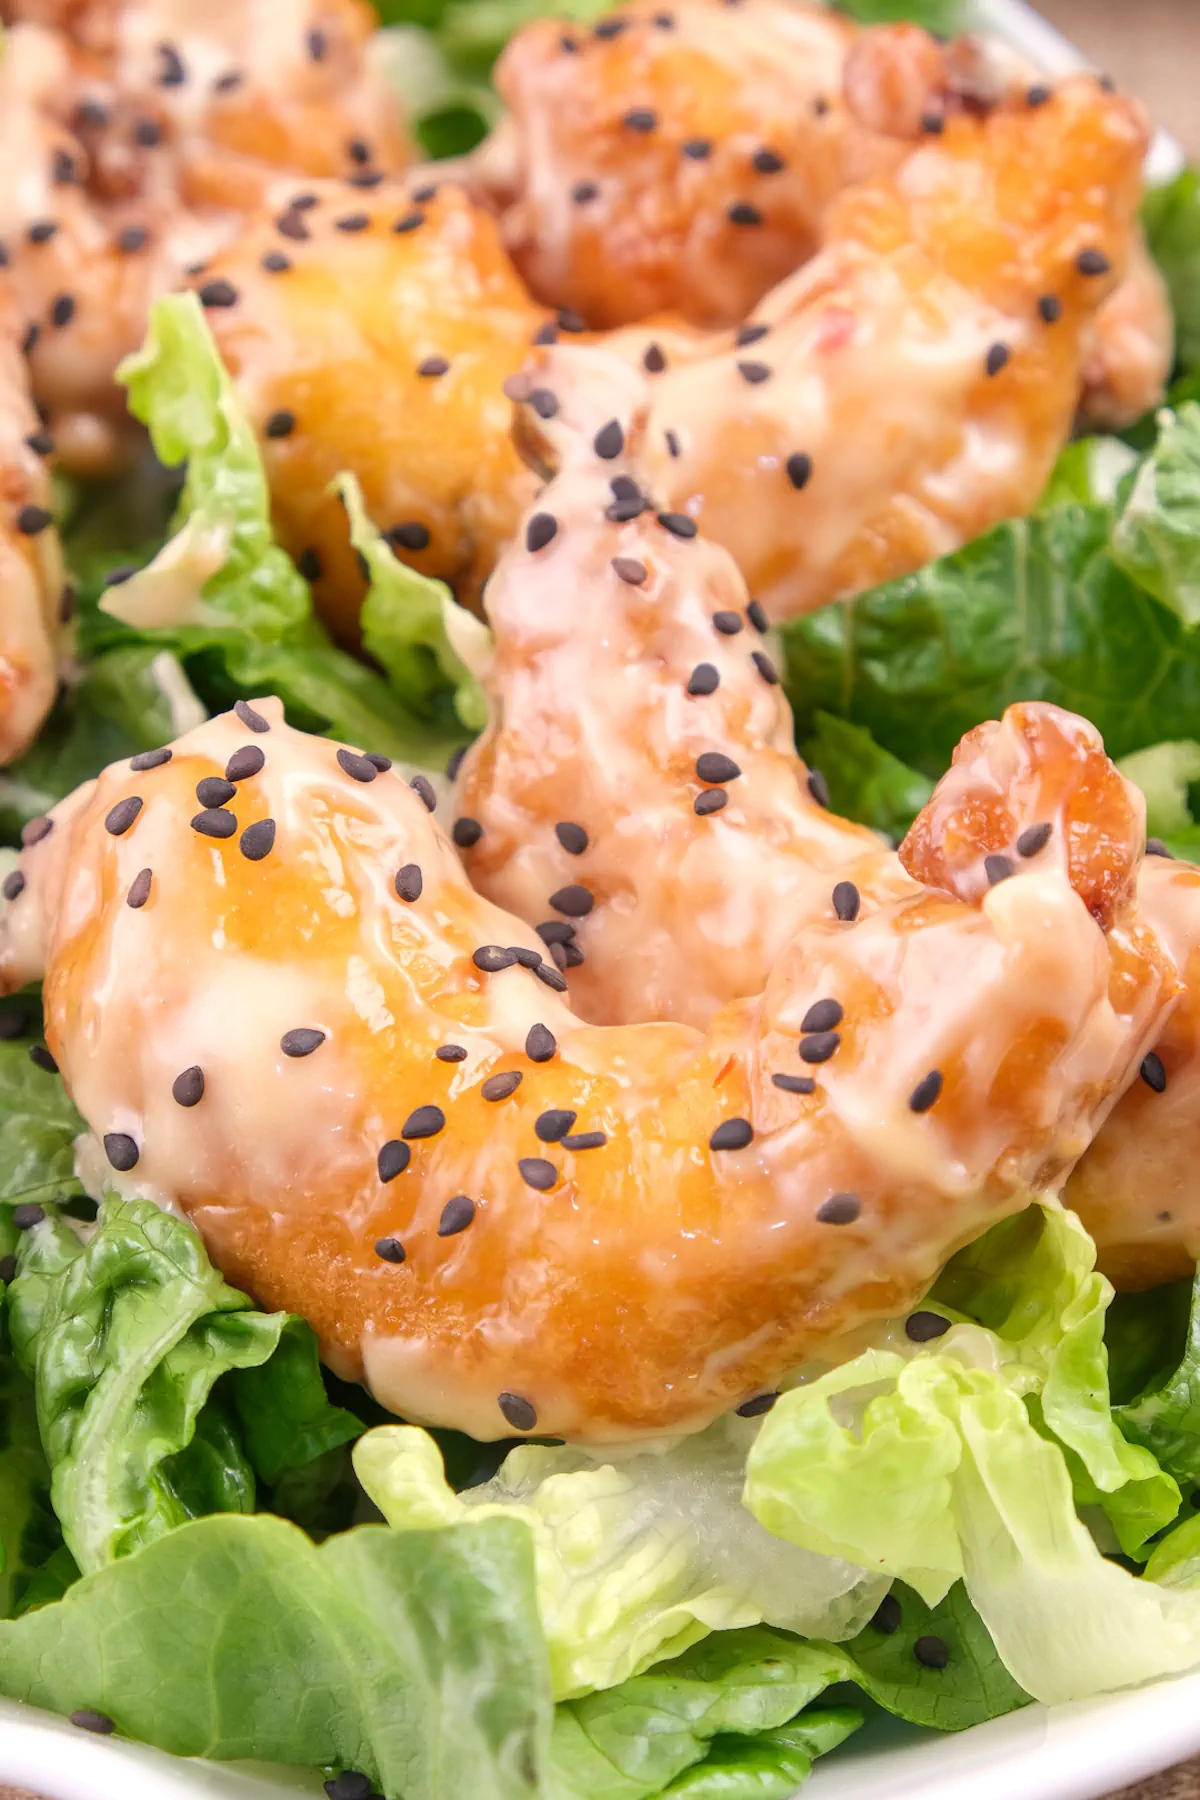 Keto bang bang shrimp garnished with toasted black sesame seeds and served on fresh lettuce leaves.